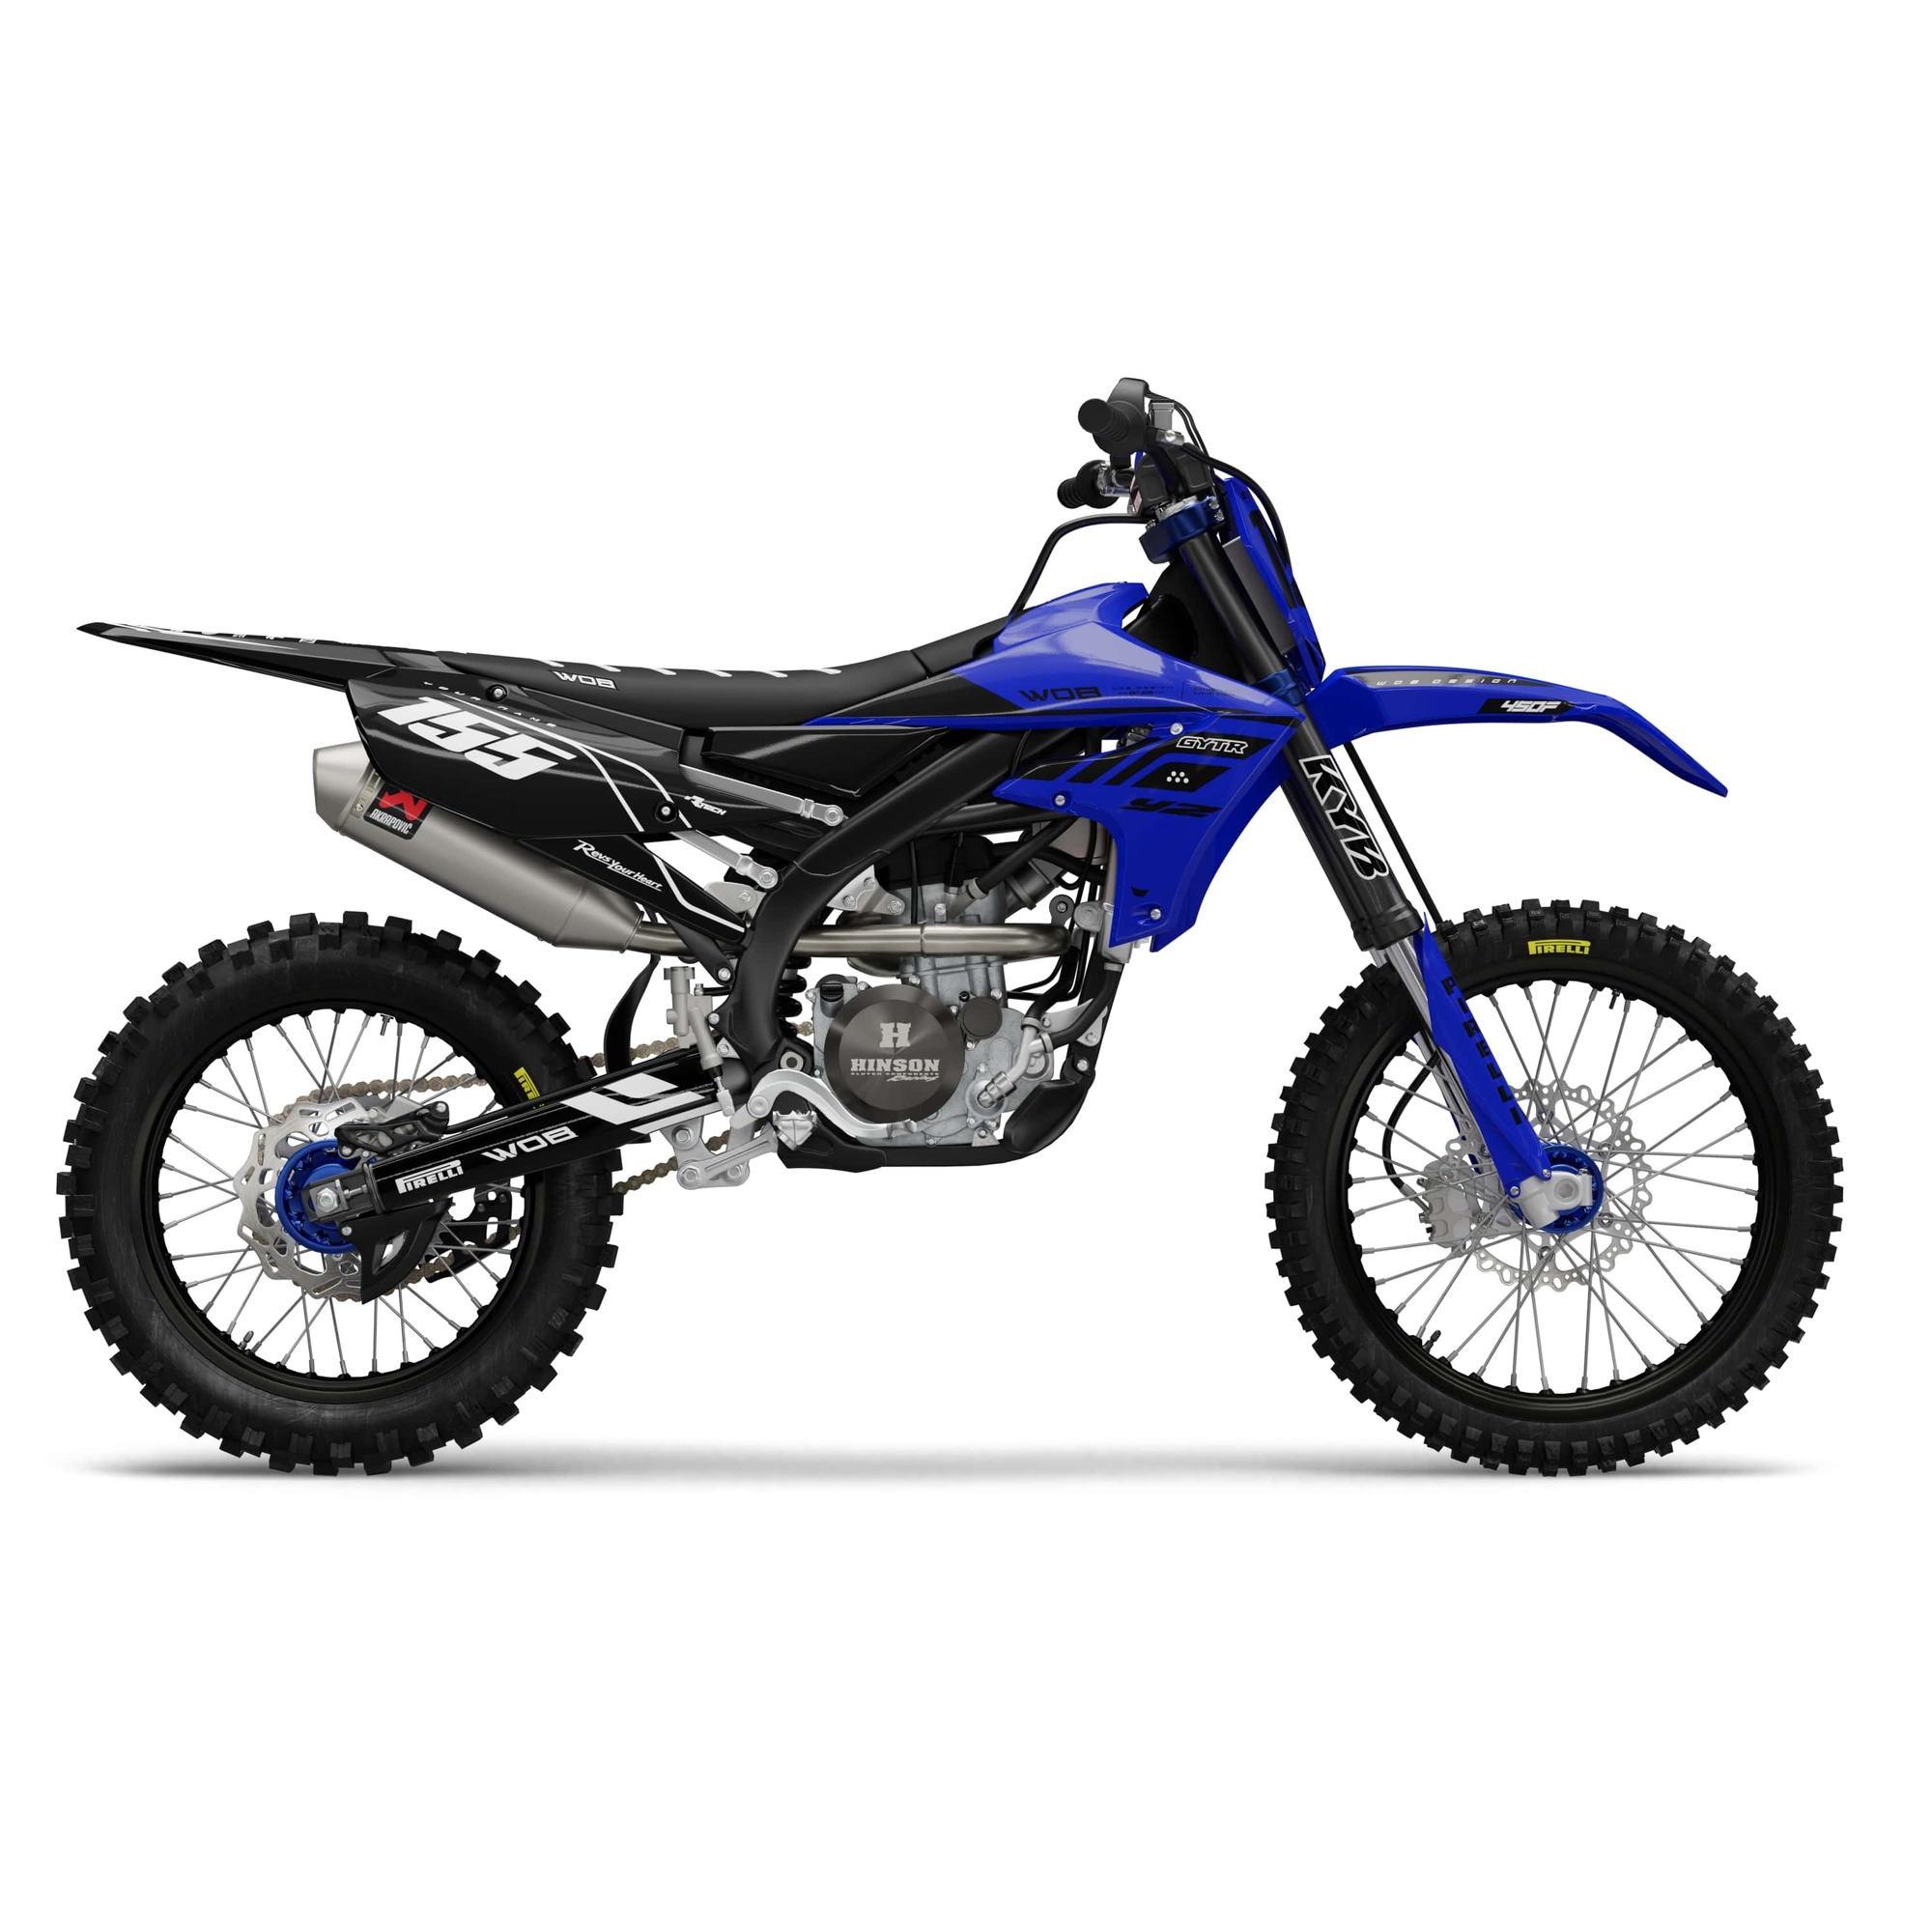 Yamaha racing blue0005